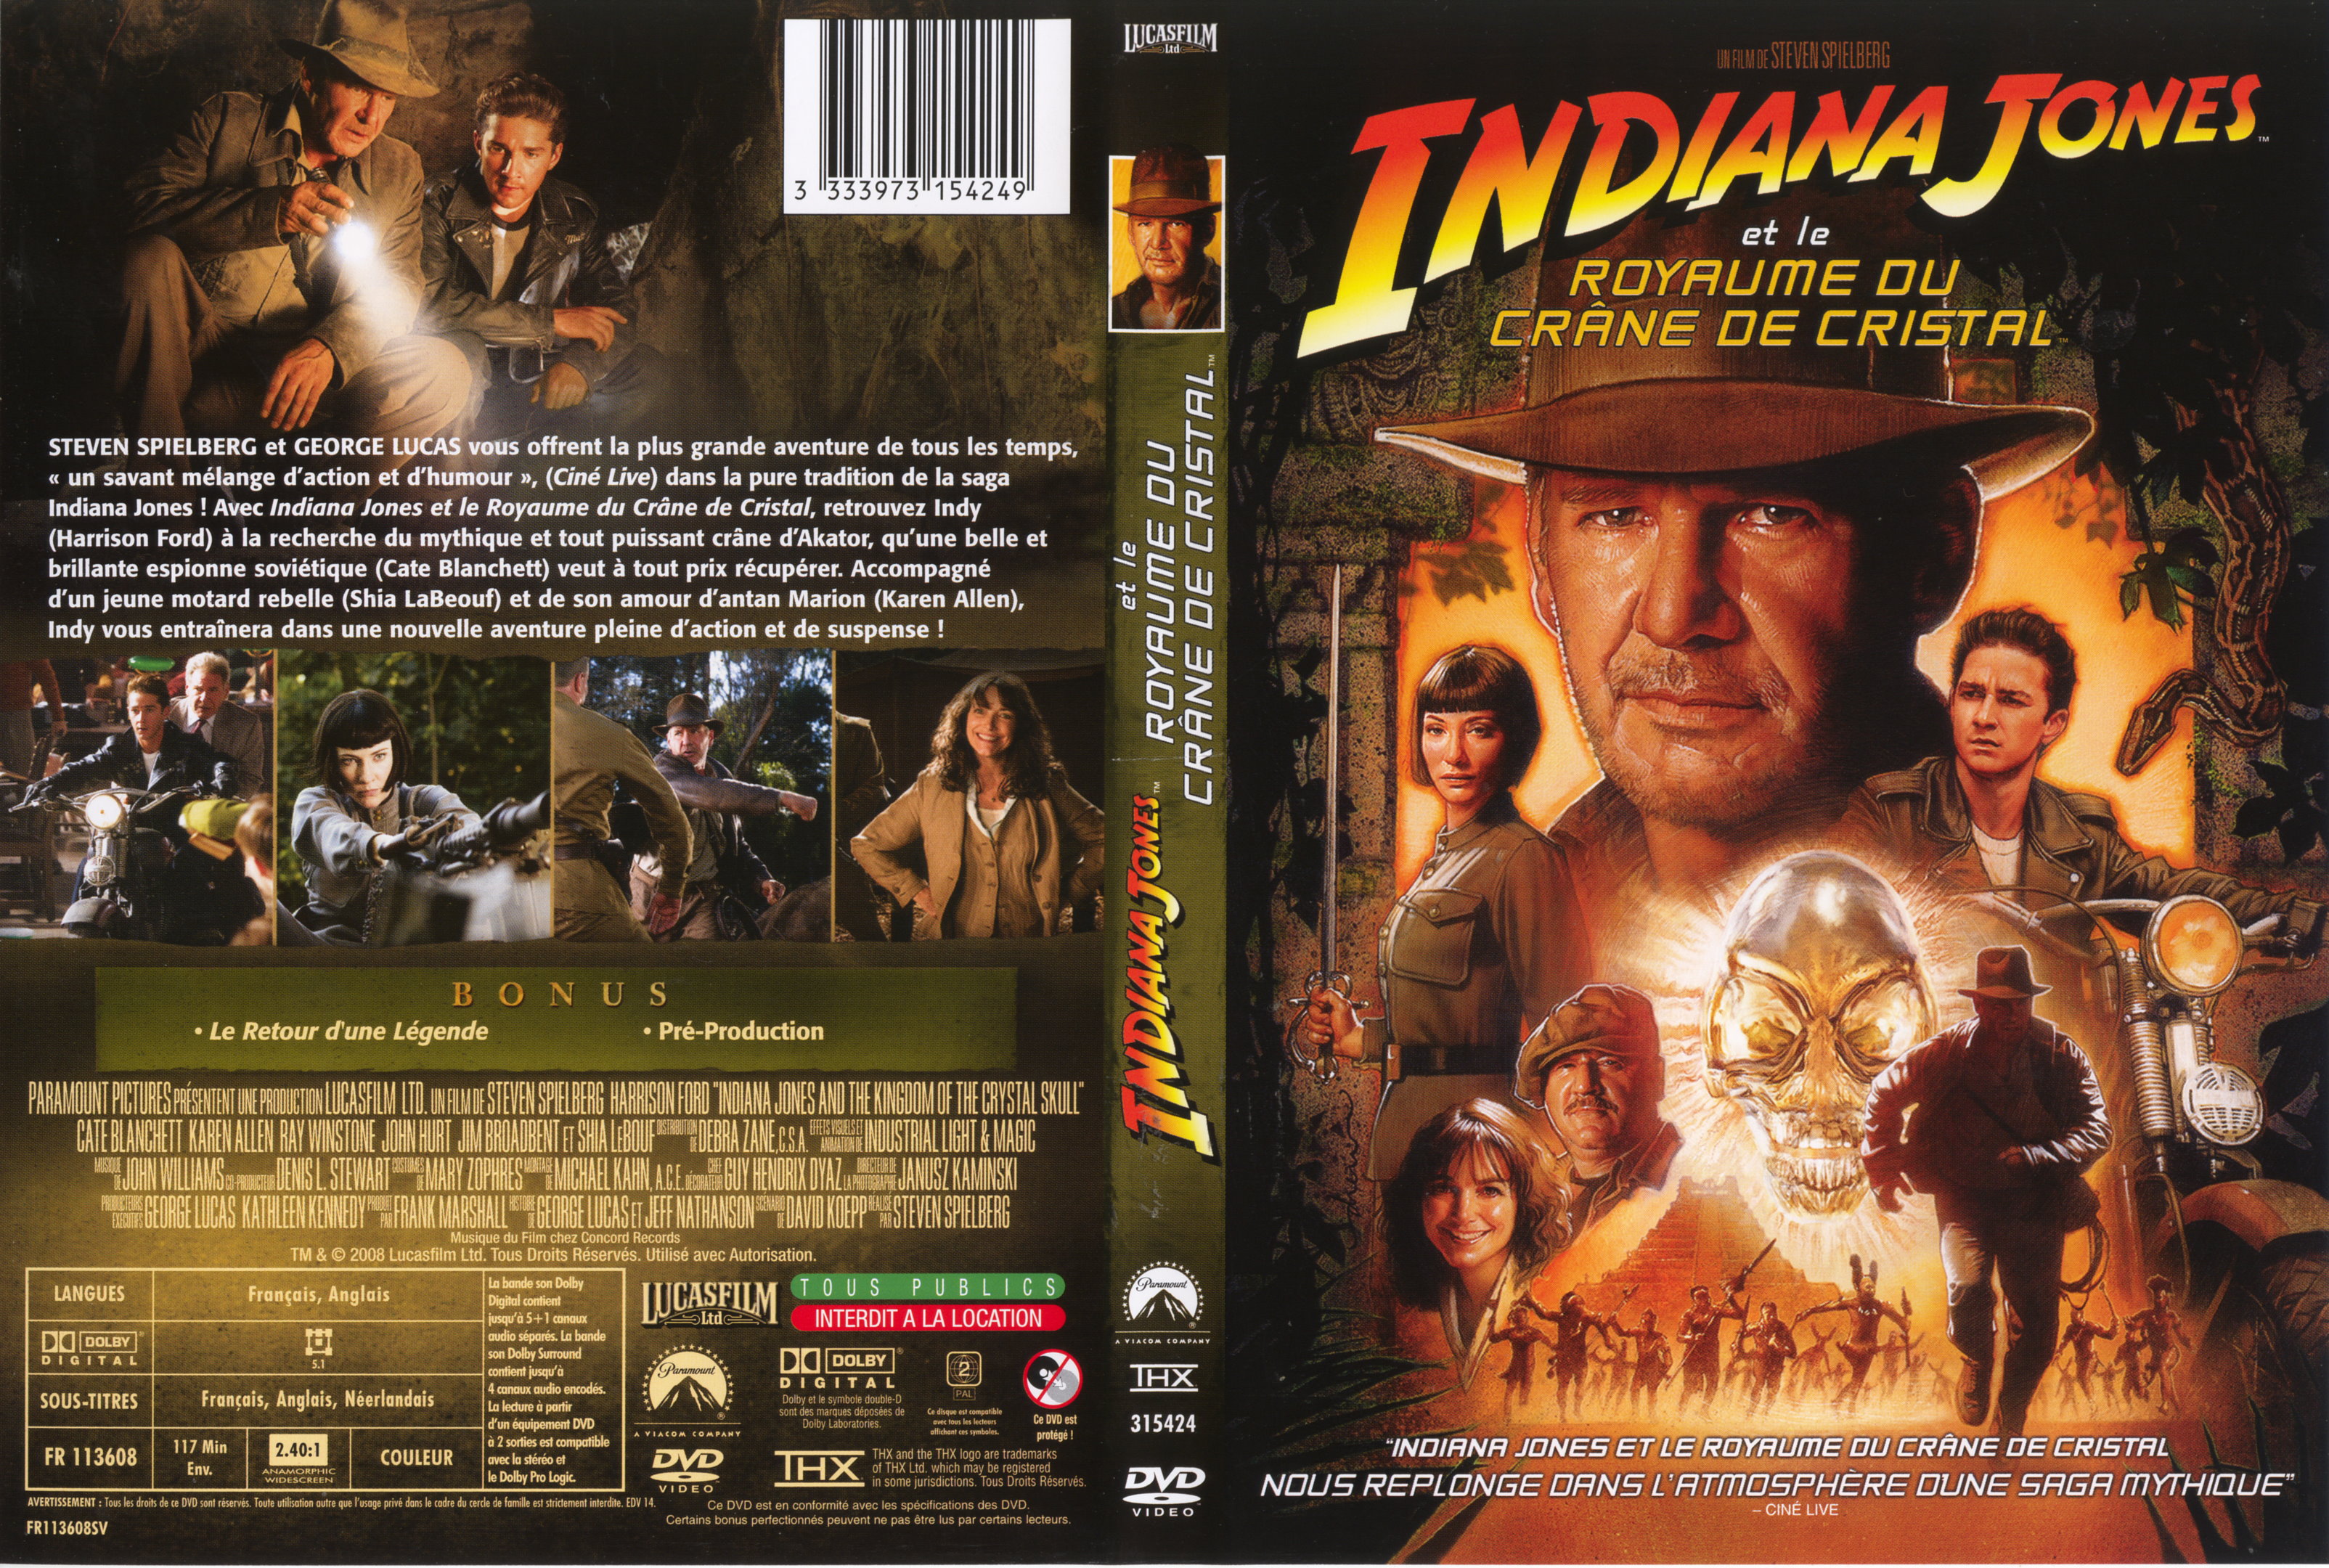 Jaquette DVD Indiana Jones et le Royaume du crane de cristal v2